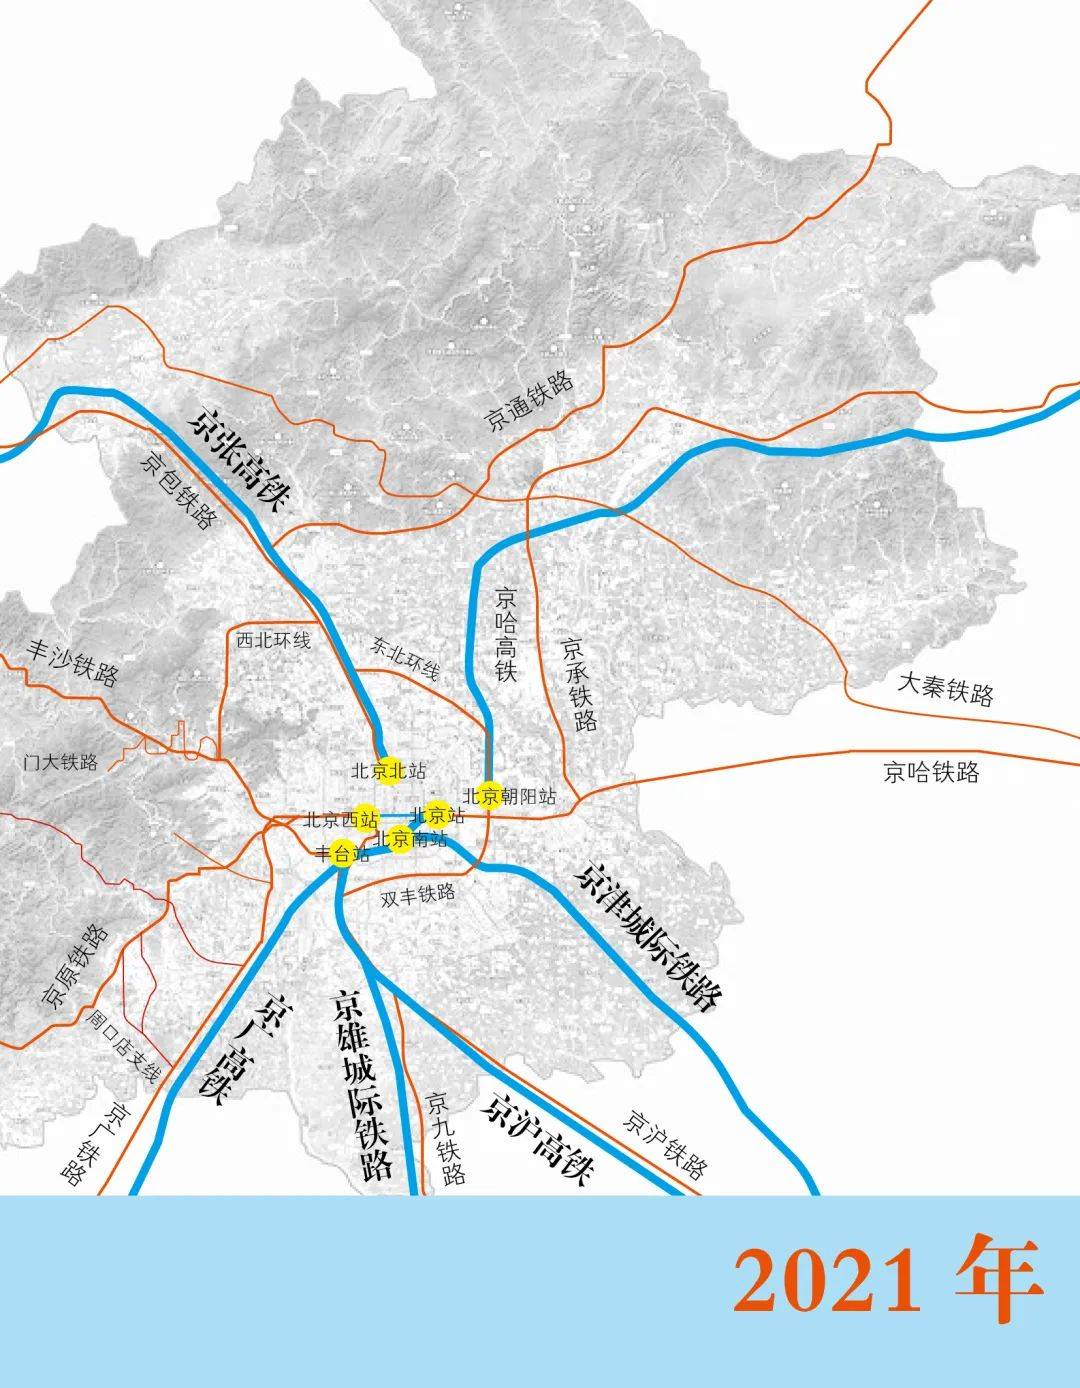 中国铁路规划网_中国铁路规划高清图_中国铁路总公司武汉光谷火车站规划